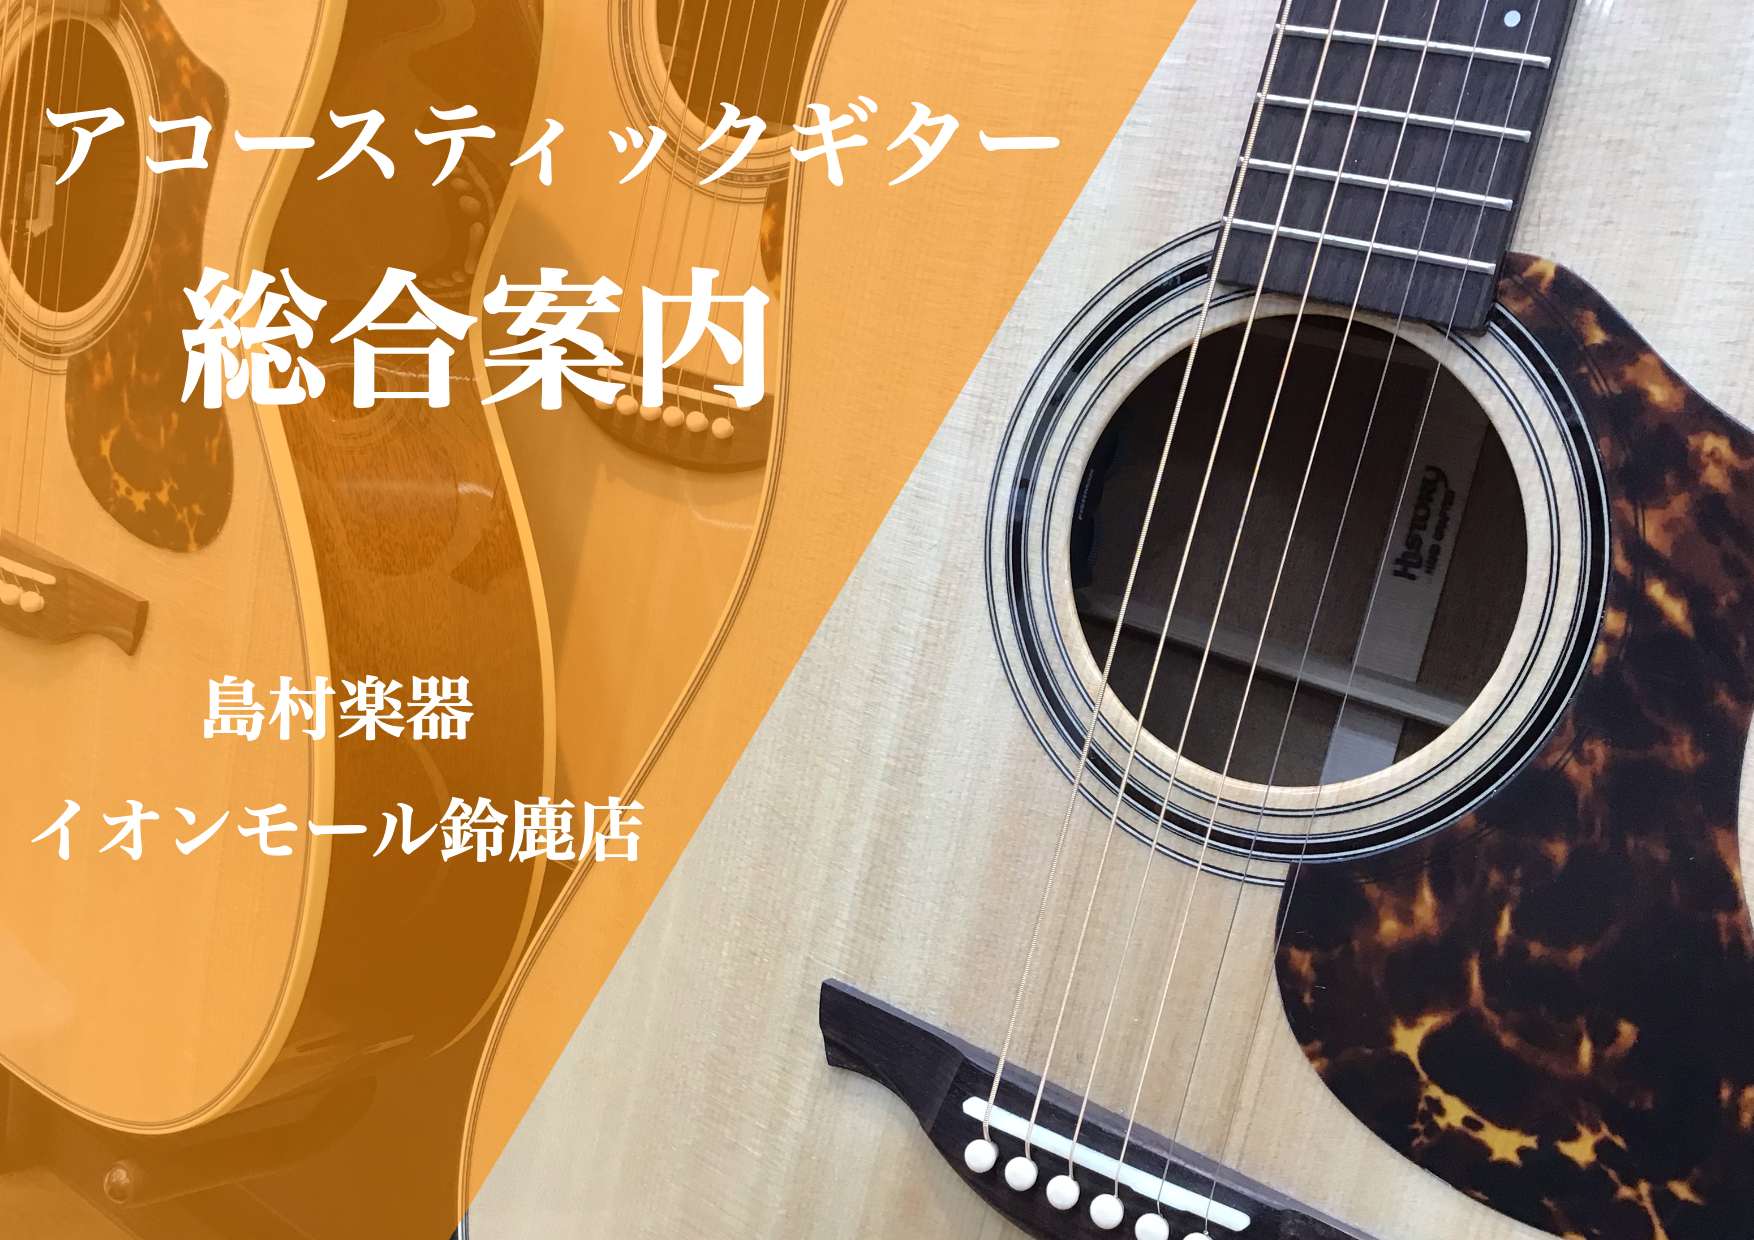 【9/21更新】アコースティックギター総合案内ページ